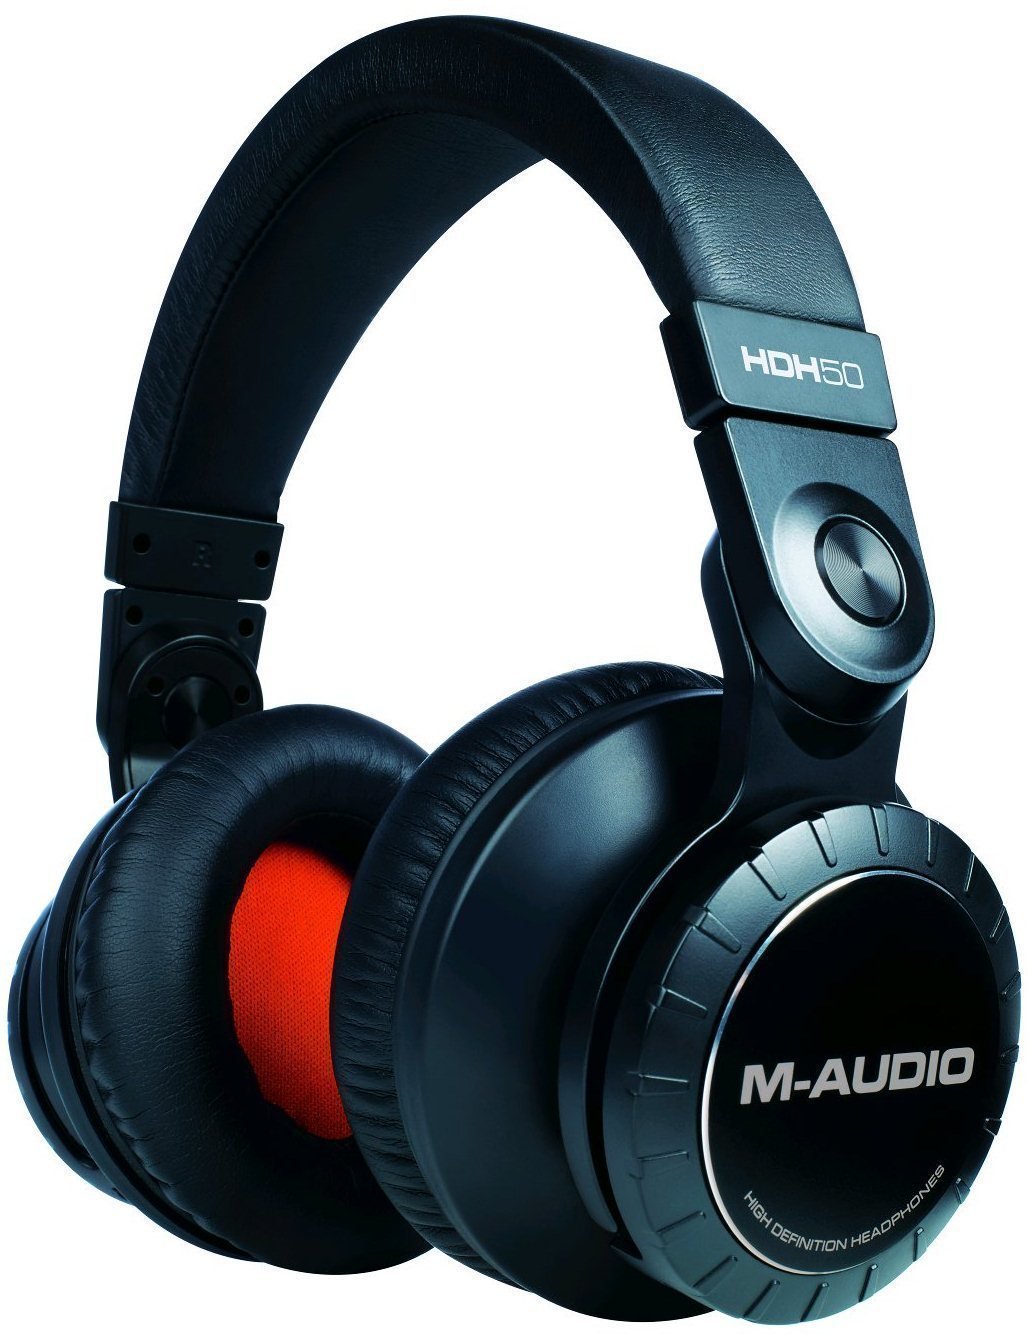 Casque studio M-Audio HDH50 High Definition Headphones